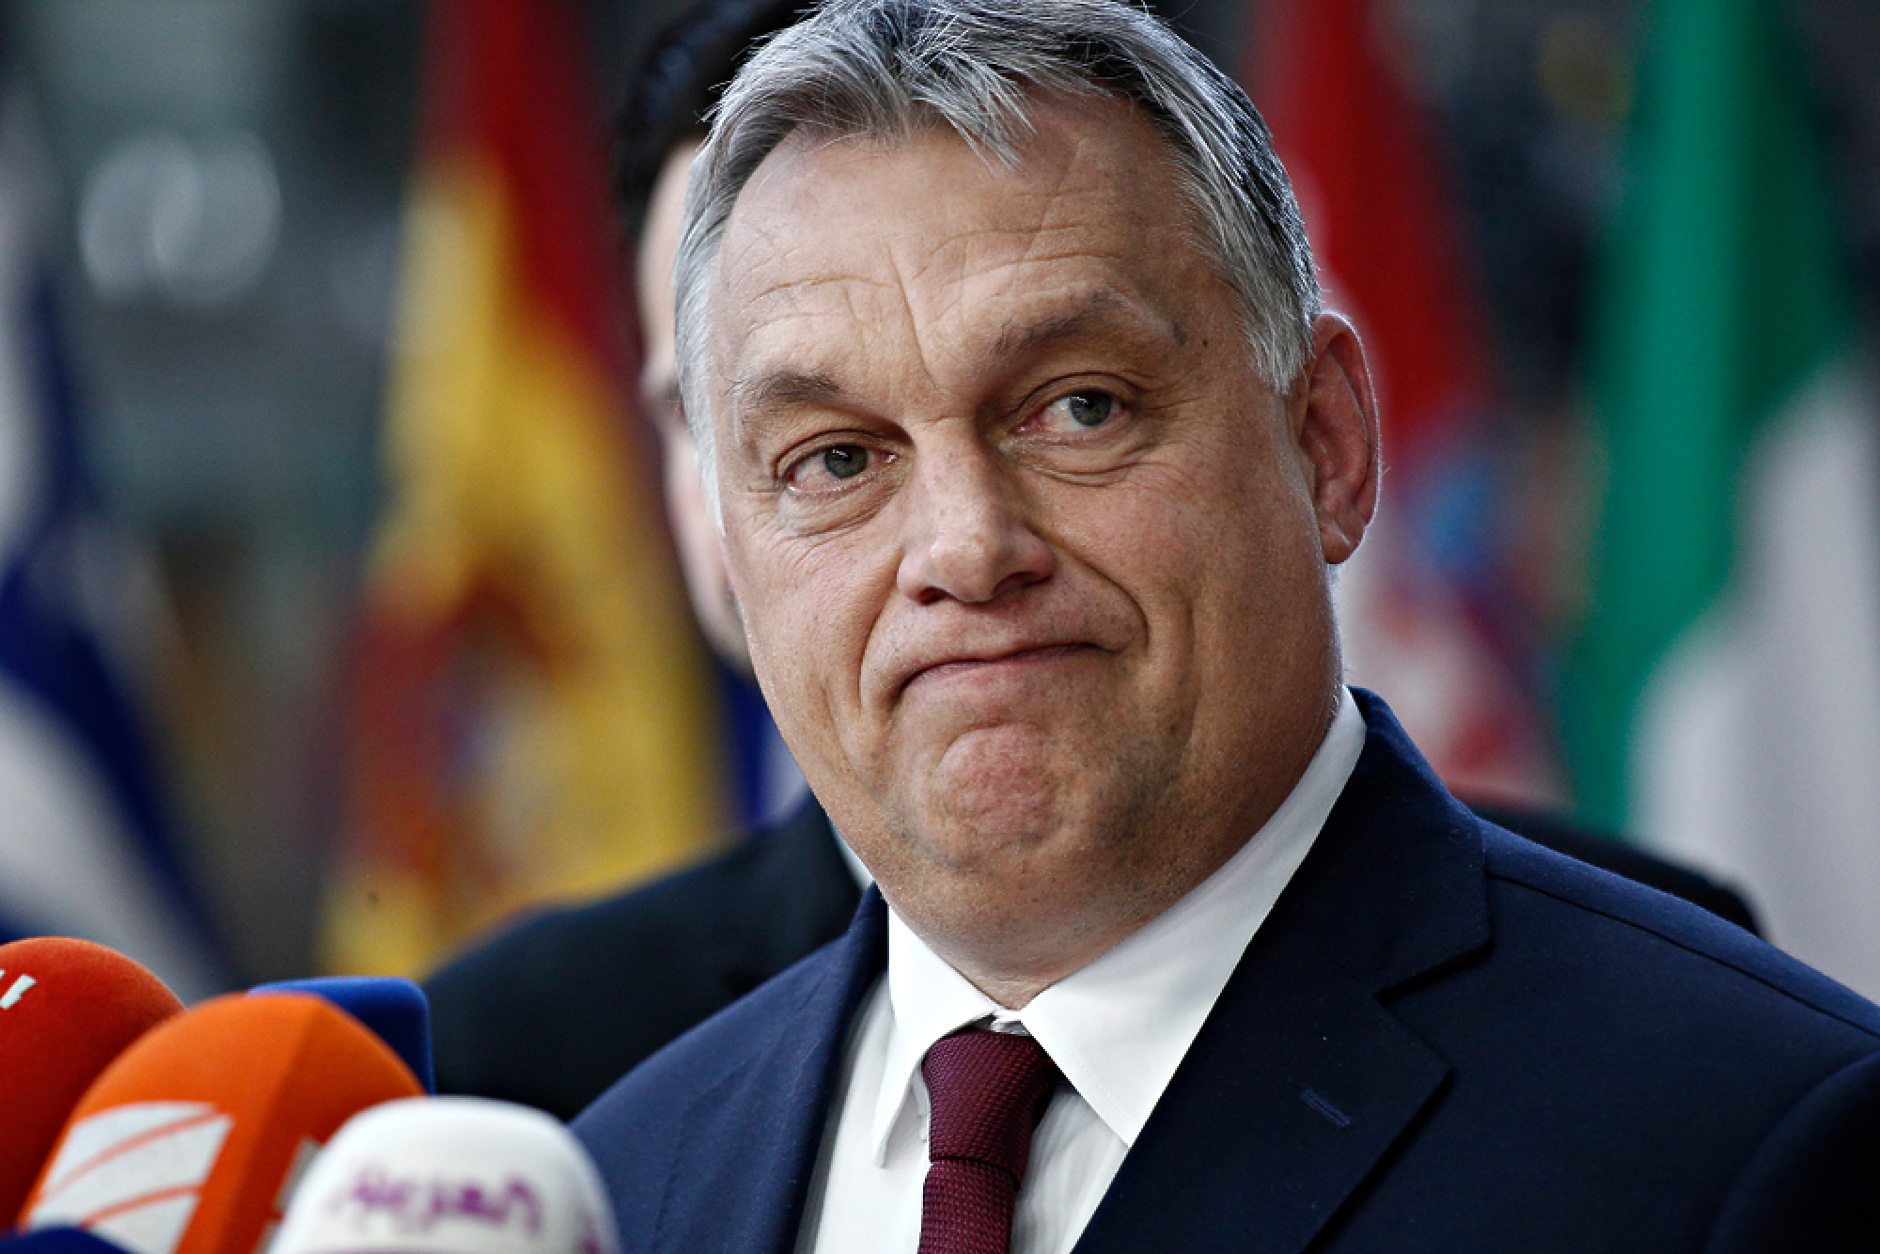 Партията на Виктор Орбан влезе в коалиция с крайнодесни в Австрия и популисти в Чехия